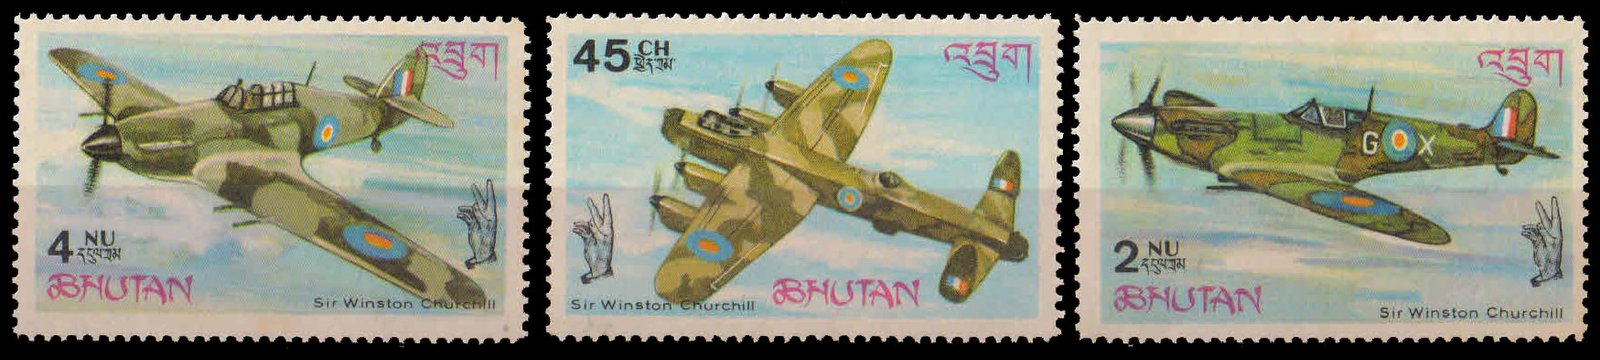 BHUTAN 1967-Churchill & Battle of Britain, Aircraft-Set of 3, MNH, S.G. 137-139-Cat £ 2.60-